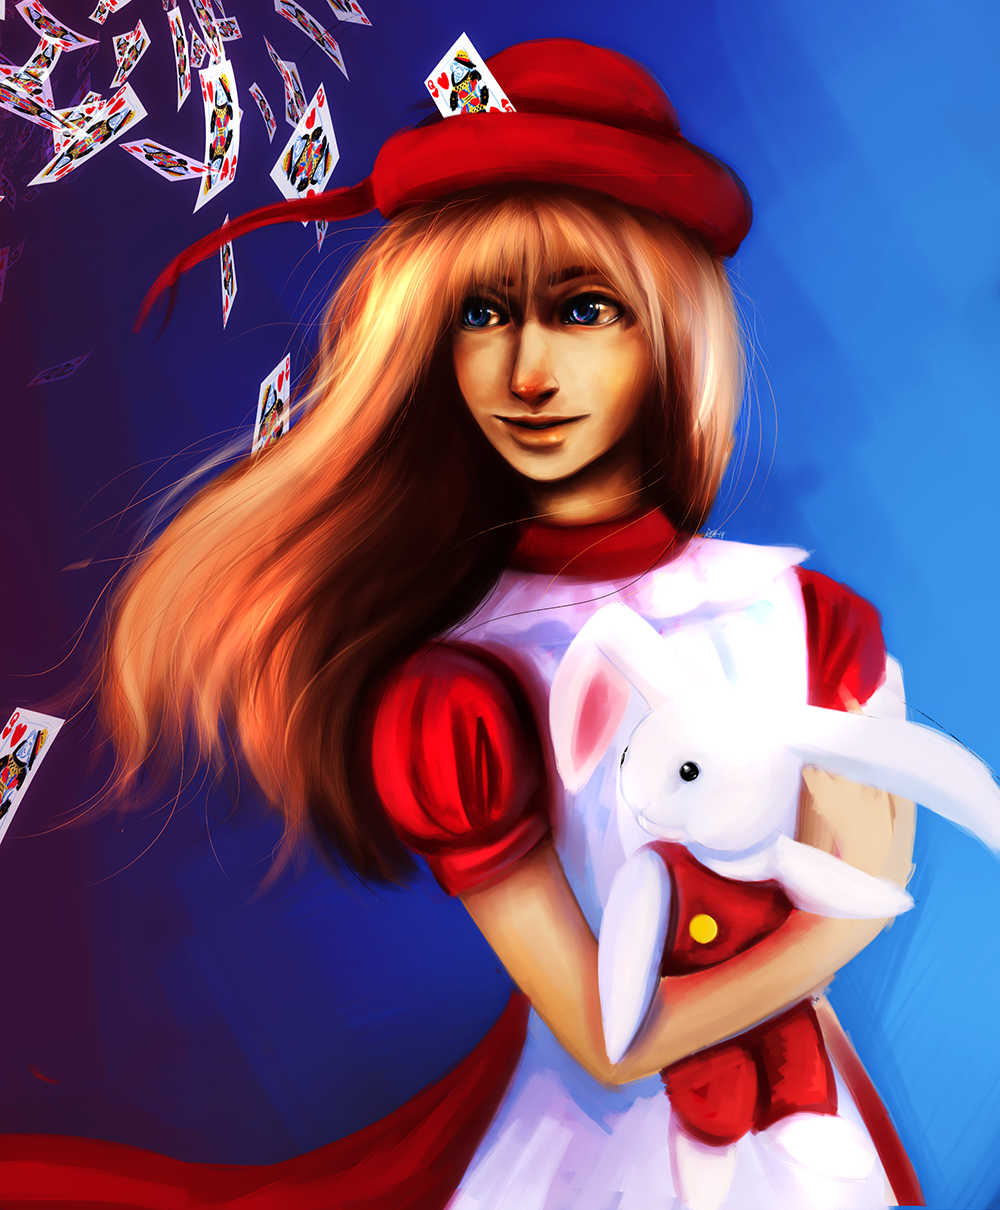 The Bunny Алиса. Алиса tinny. Алиса Тини Банни. Tiny Bunny Алиса арт 18.